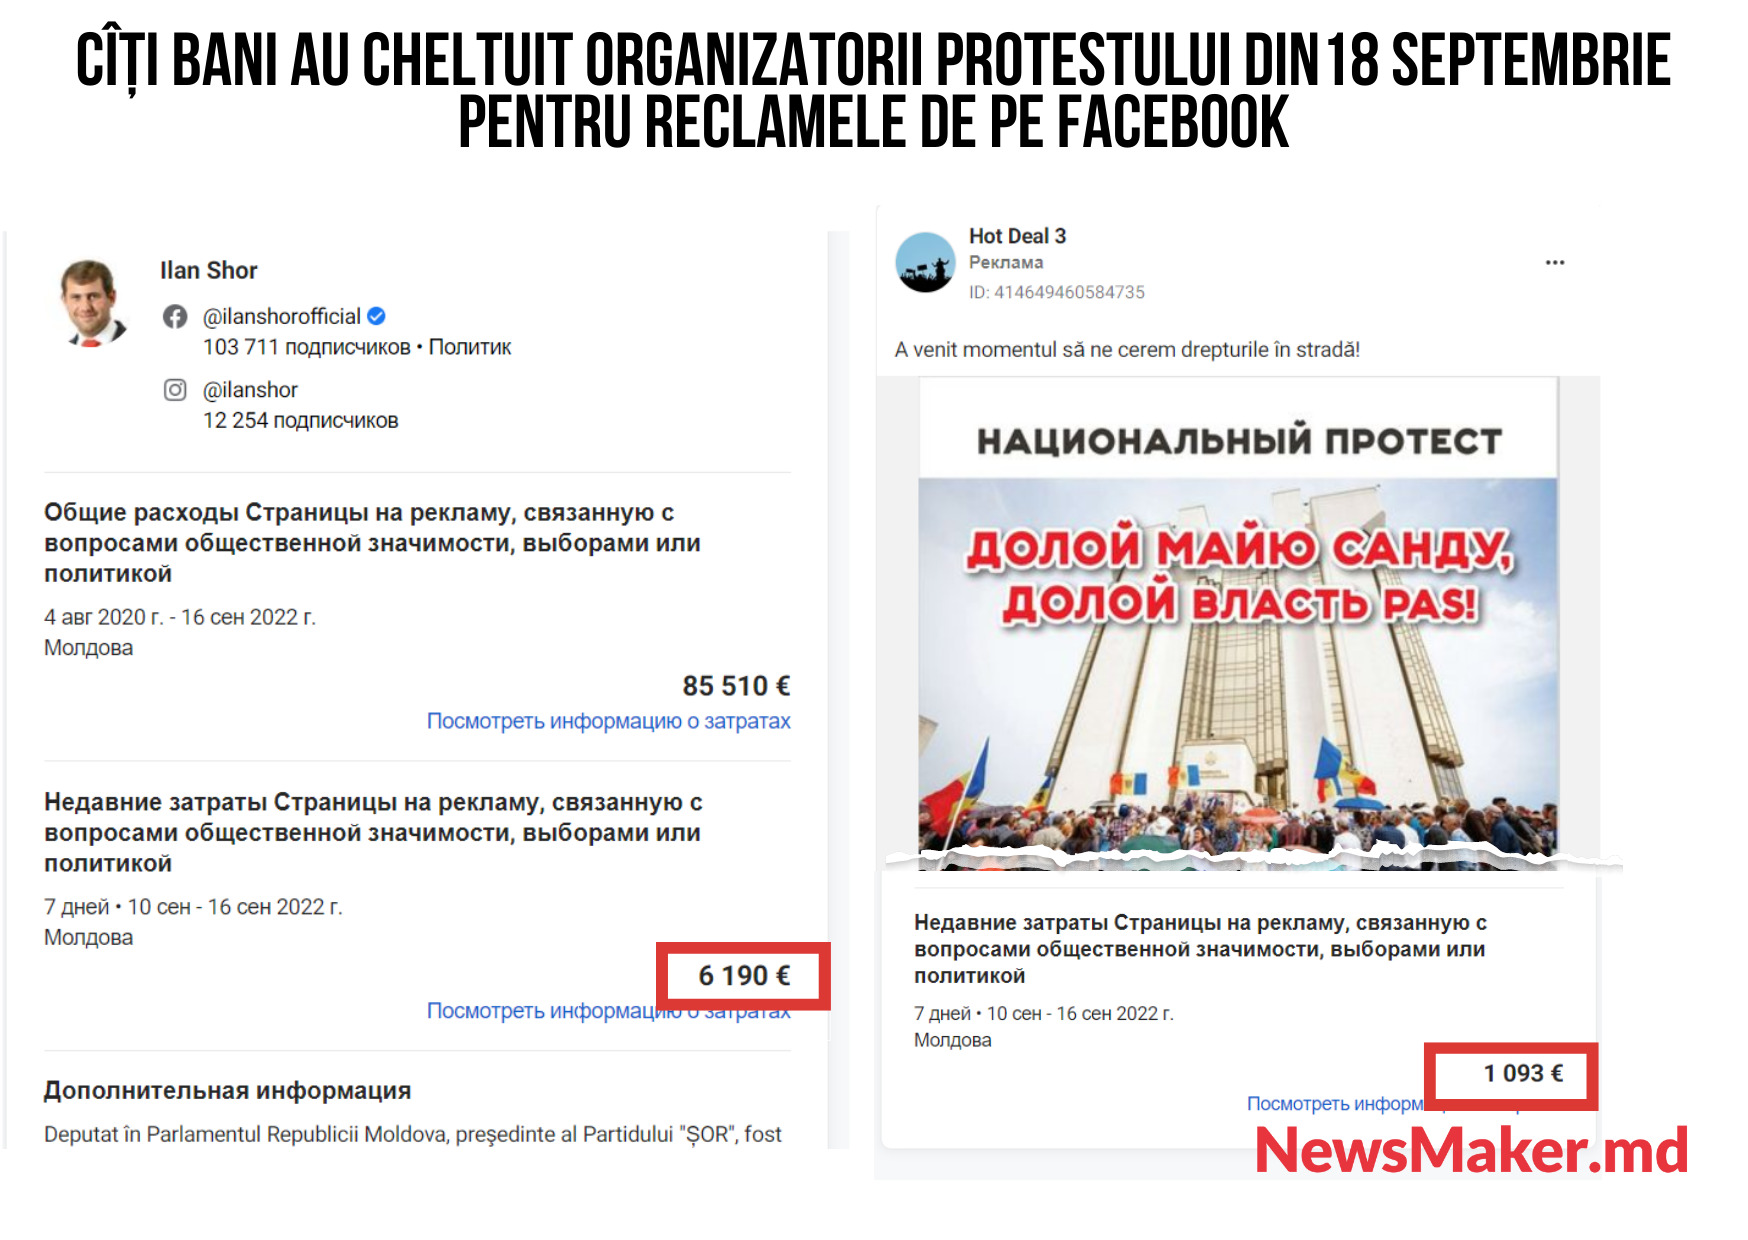 Шор потратил более €7 тыс. на рекламу в Facebook протеста в Кишиневе